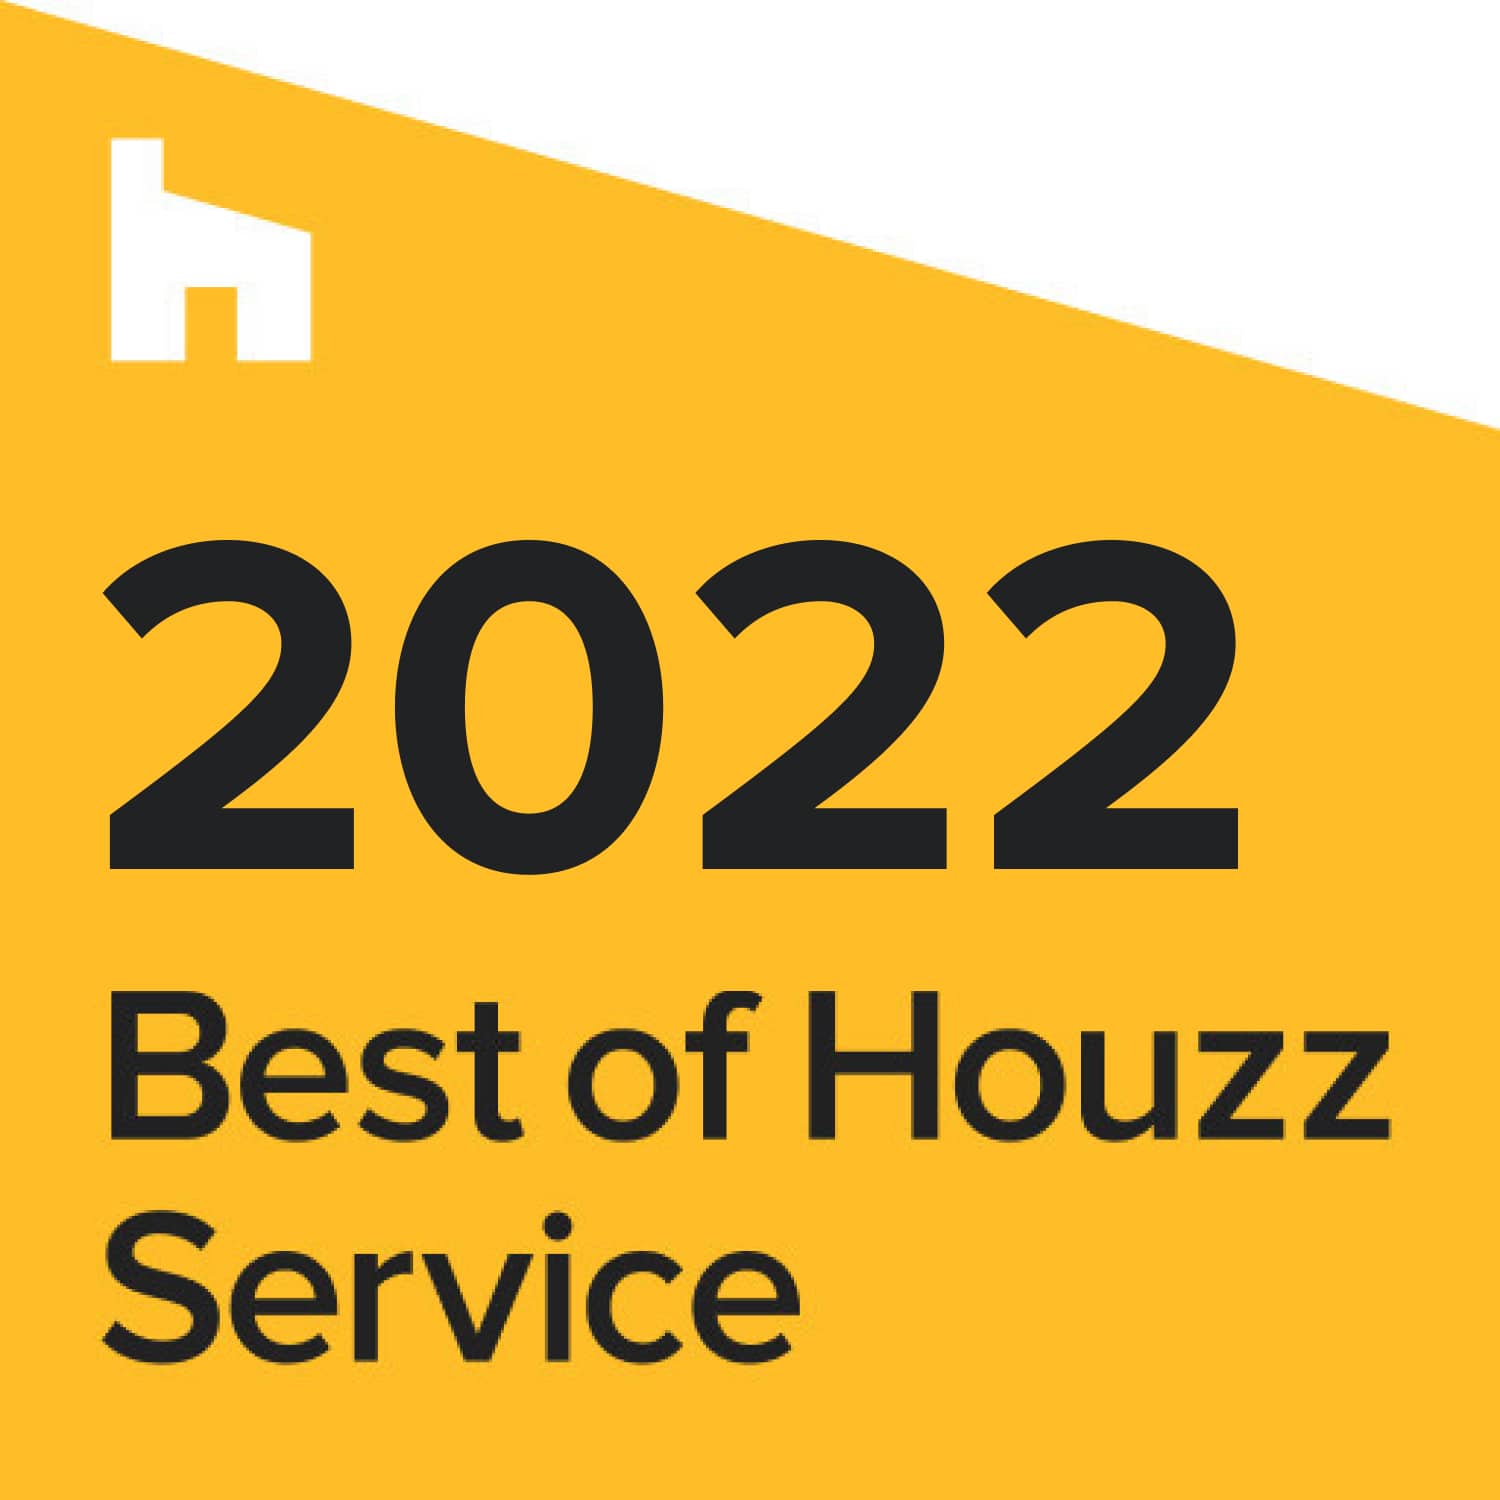 2022 best of houzz interior design service.